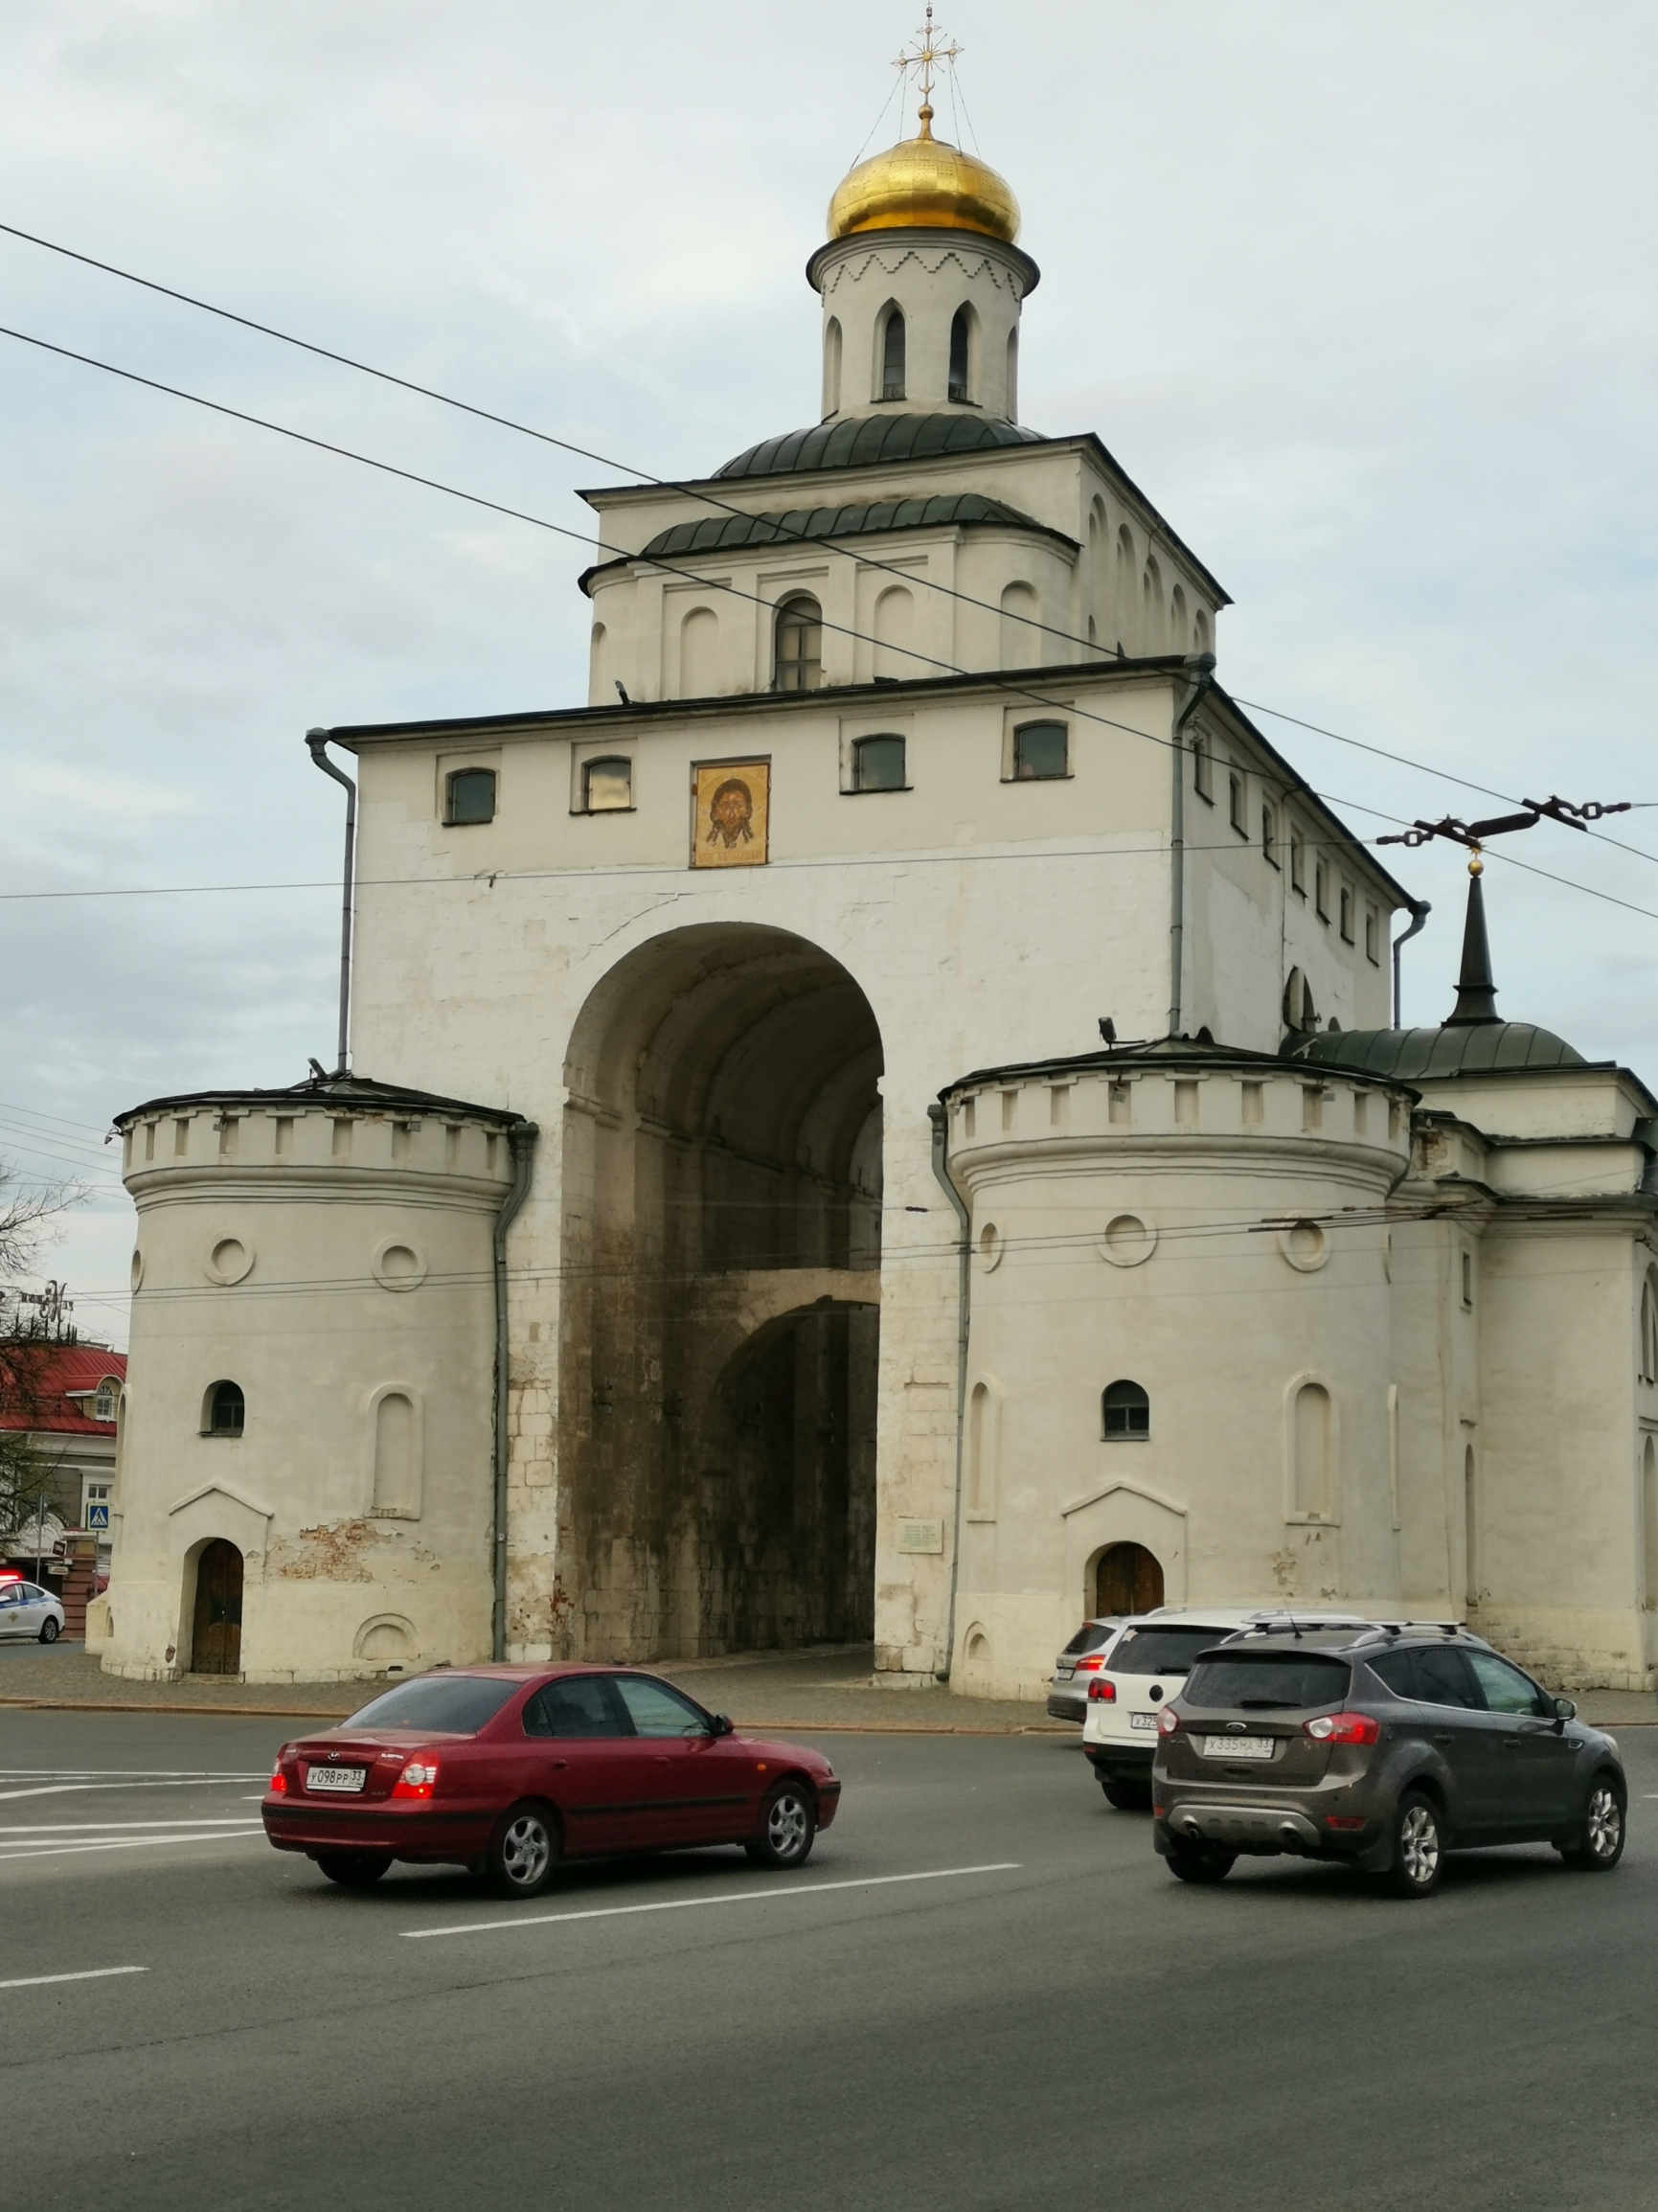 俄罗斯金环小镇弗拉基米尔，有着独一无二的古迹，金门、圣母升天大教堂、德米特列耶夫教堂等，被列为世界文